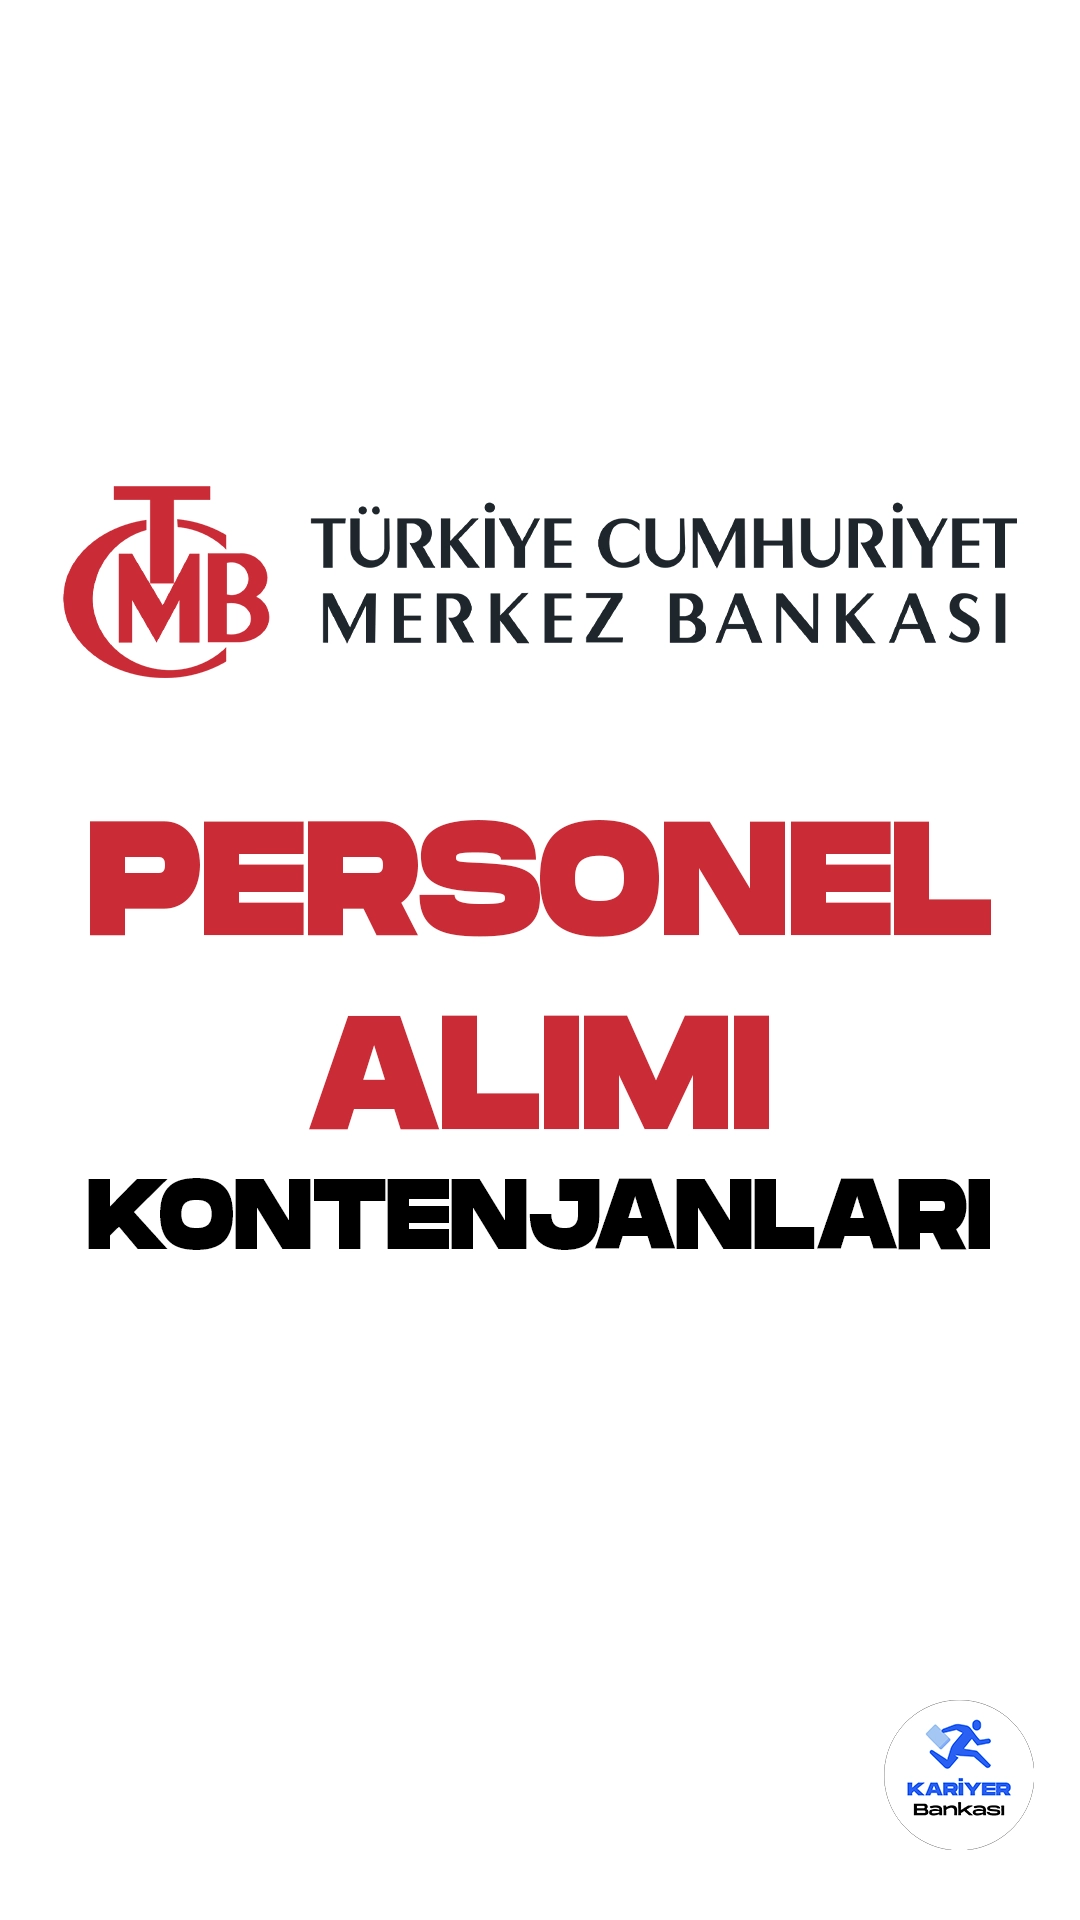 Merkez Bankası personel alımı başvuru işlemleri devam ediyor. Türkiye Cumhuriyet Merkez Bankası (TCMB) resmi sayfasından yayımlan duyurulara göre, Banka bünyesinde istihdam edilmek üzere mühendis ve teknisyen alımları gerçekleştirilecek. Başvuruların 21 Ağustos 2023 tarihinde sonra ereceği aktarılırken, adayların şartları dikkatle incelemesi gerektiği kaydedildi.